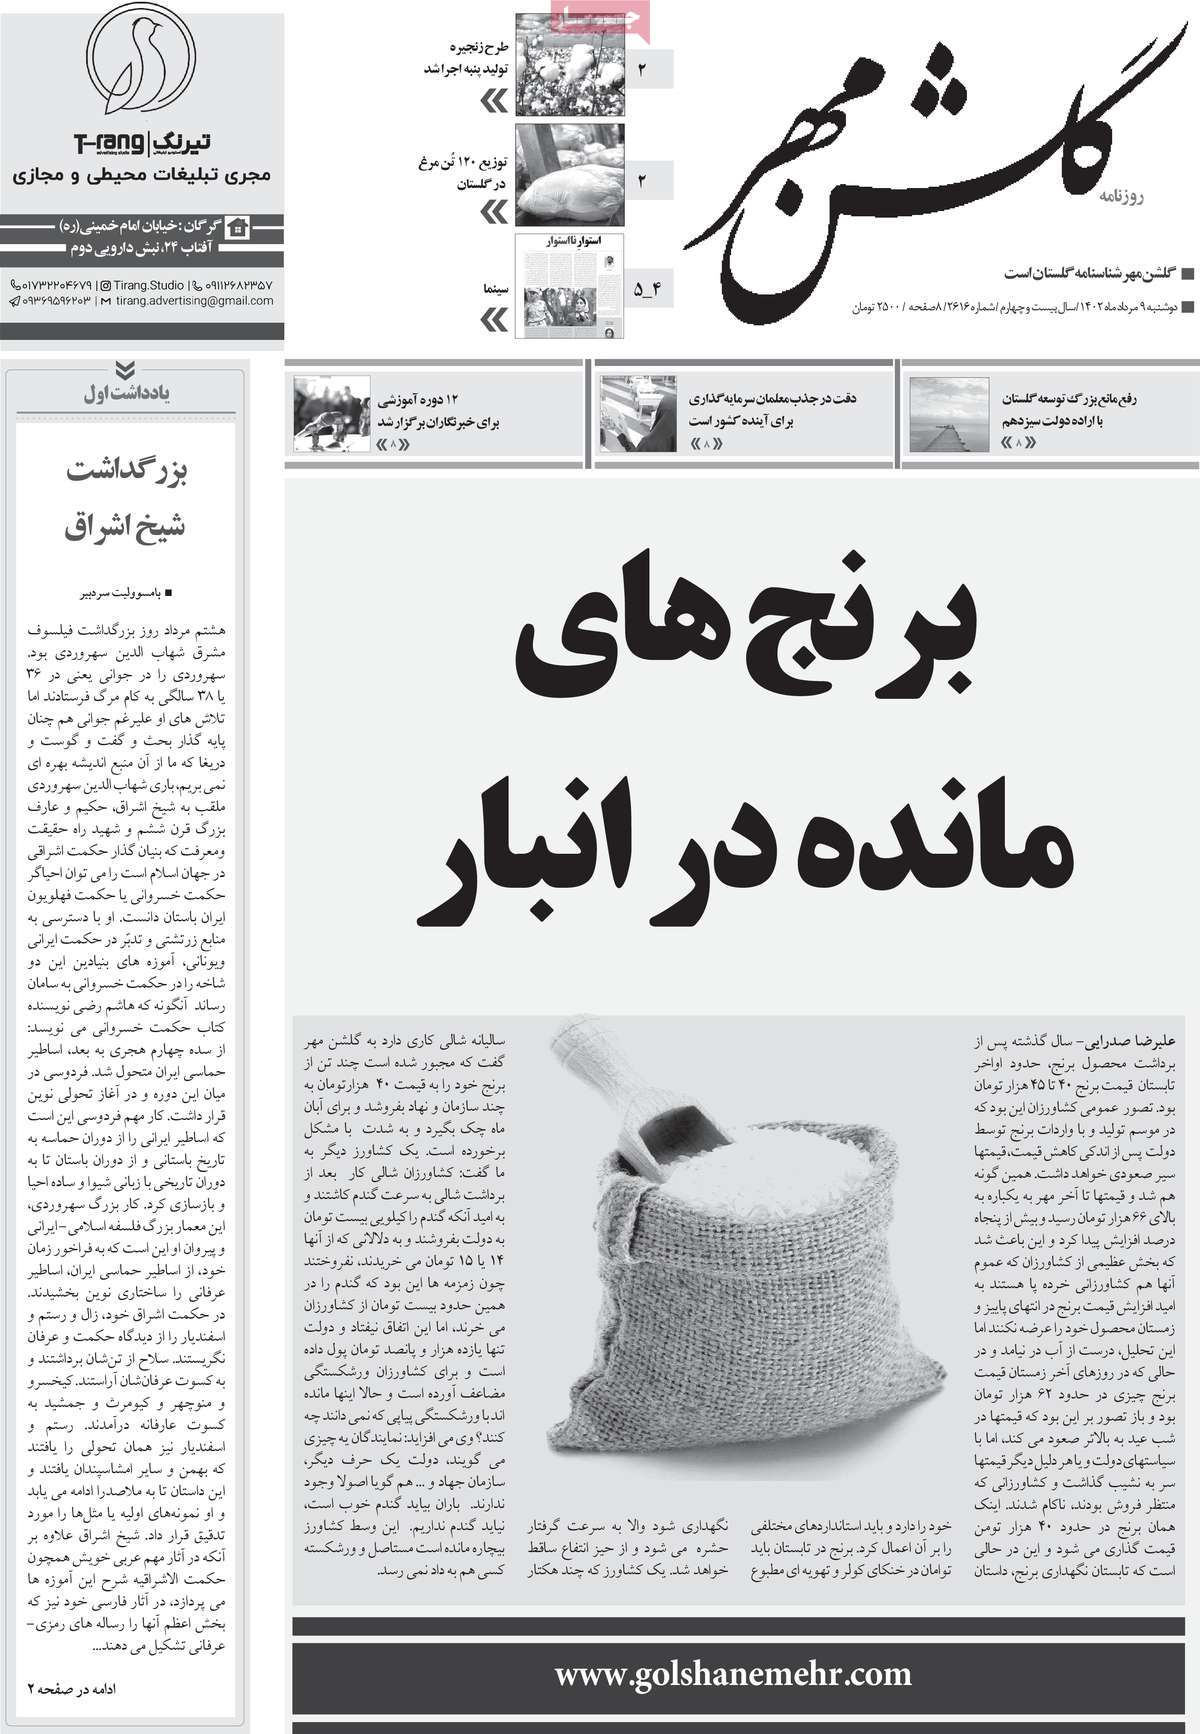 صفحه اول روزنامه های استانی امروز/ روزنامه گلشن مهر